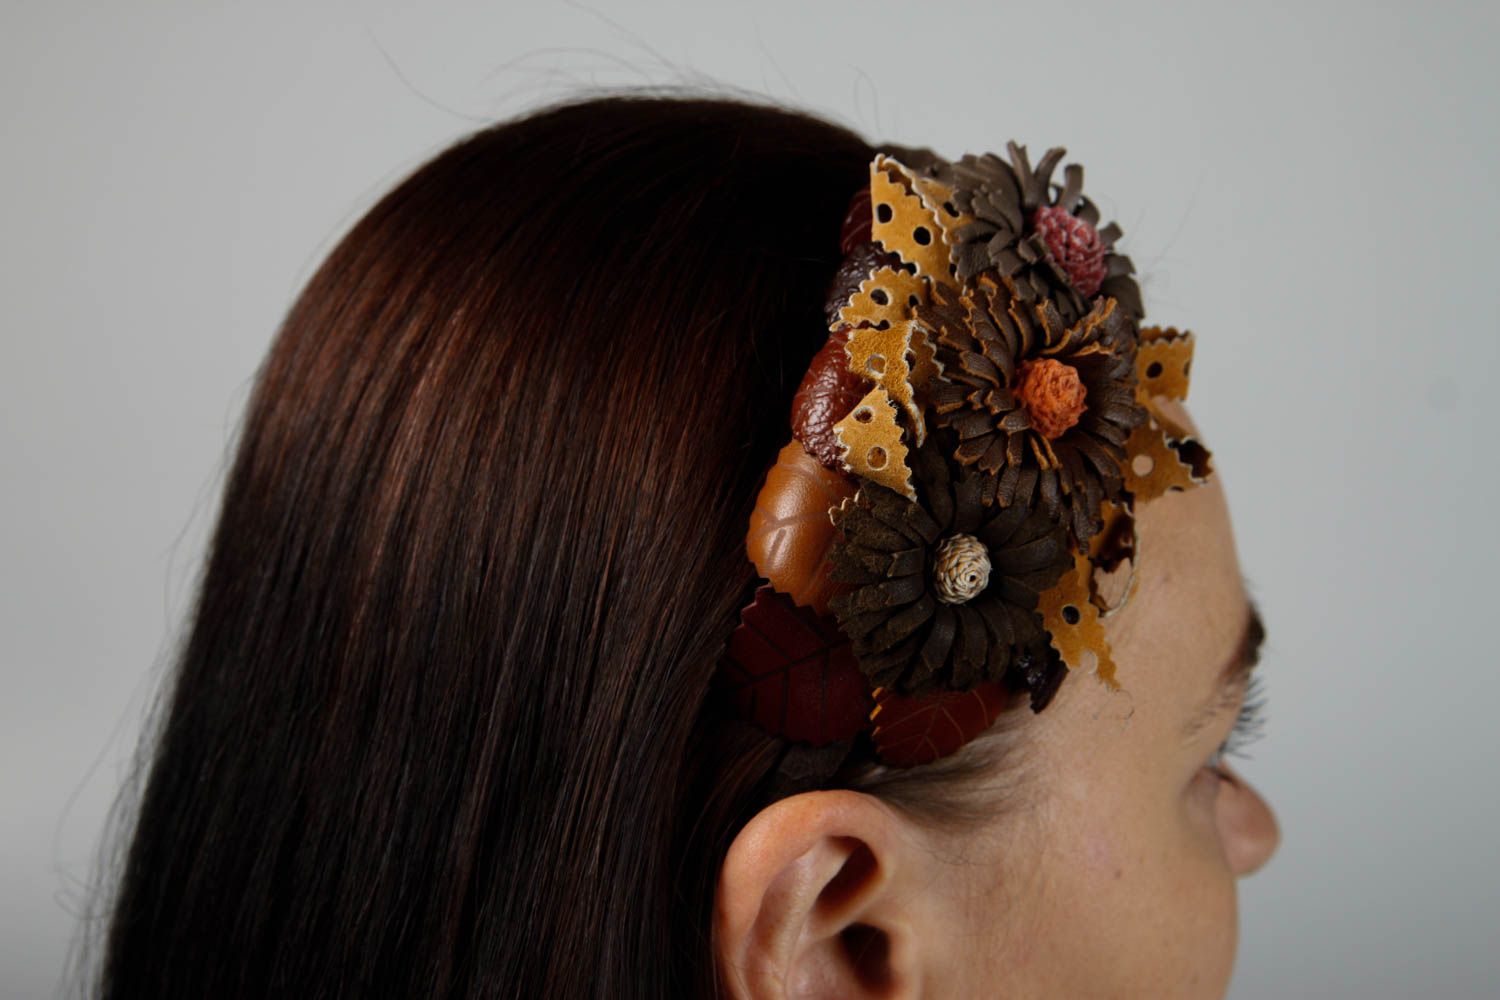 Аксессуар для волос хэнд мейд обруч на голову симпатичный женский аксессуар фото 2